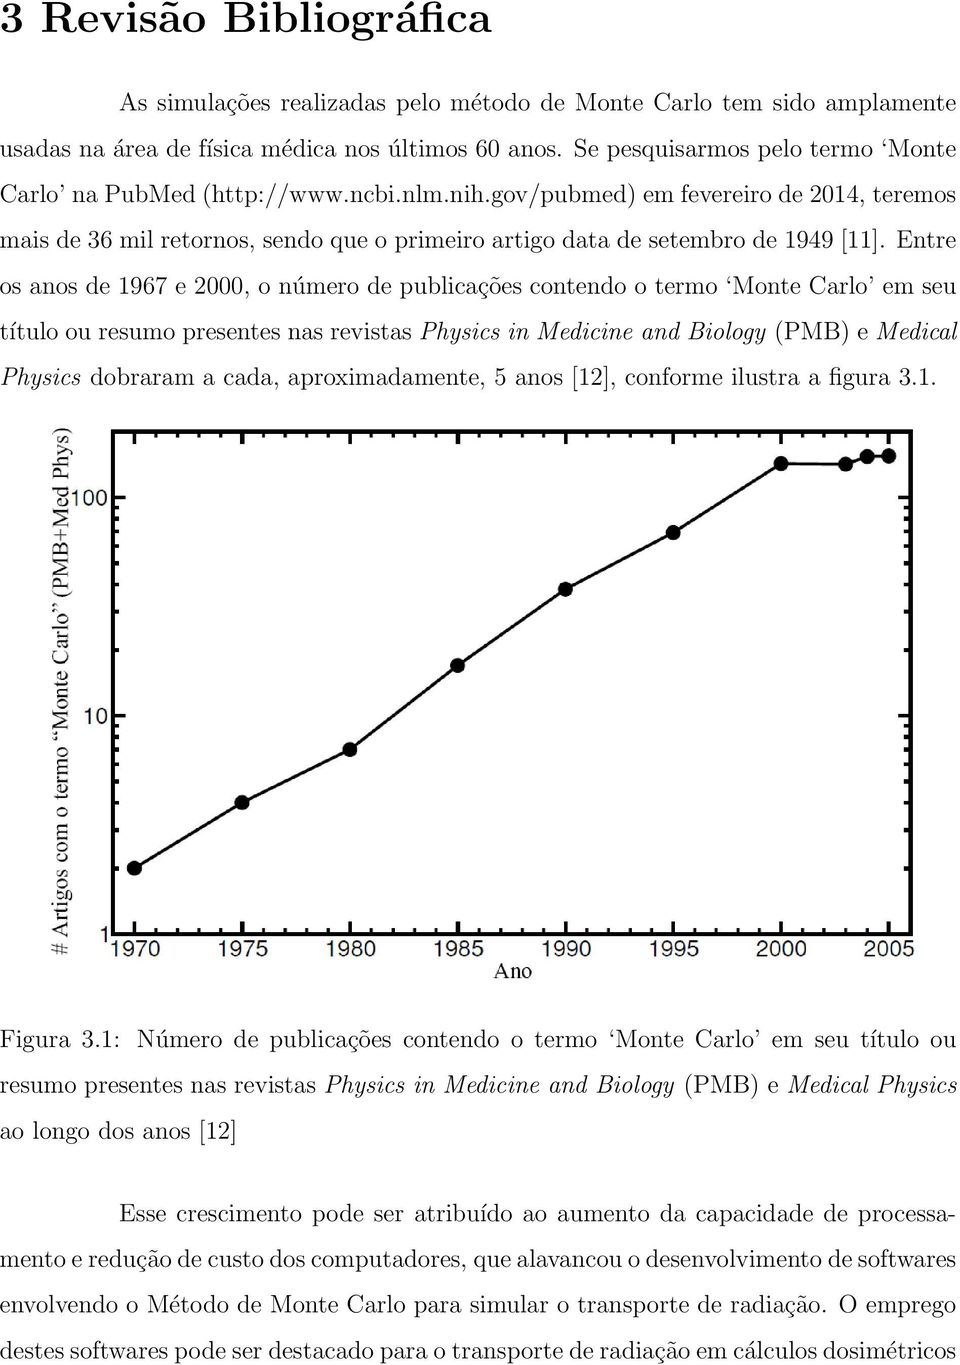 Entre os anos de 1967 e 2000, o número de publicações contendo o termo Monte Carlo em seu título ou resumo presentes nas revistas Physics in Medicine and Biology (PMB) e Medical Physics dobraram a